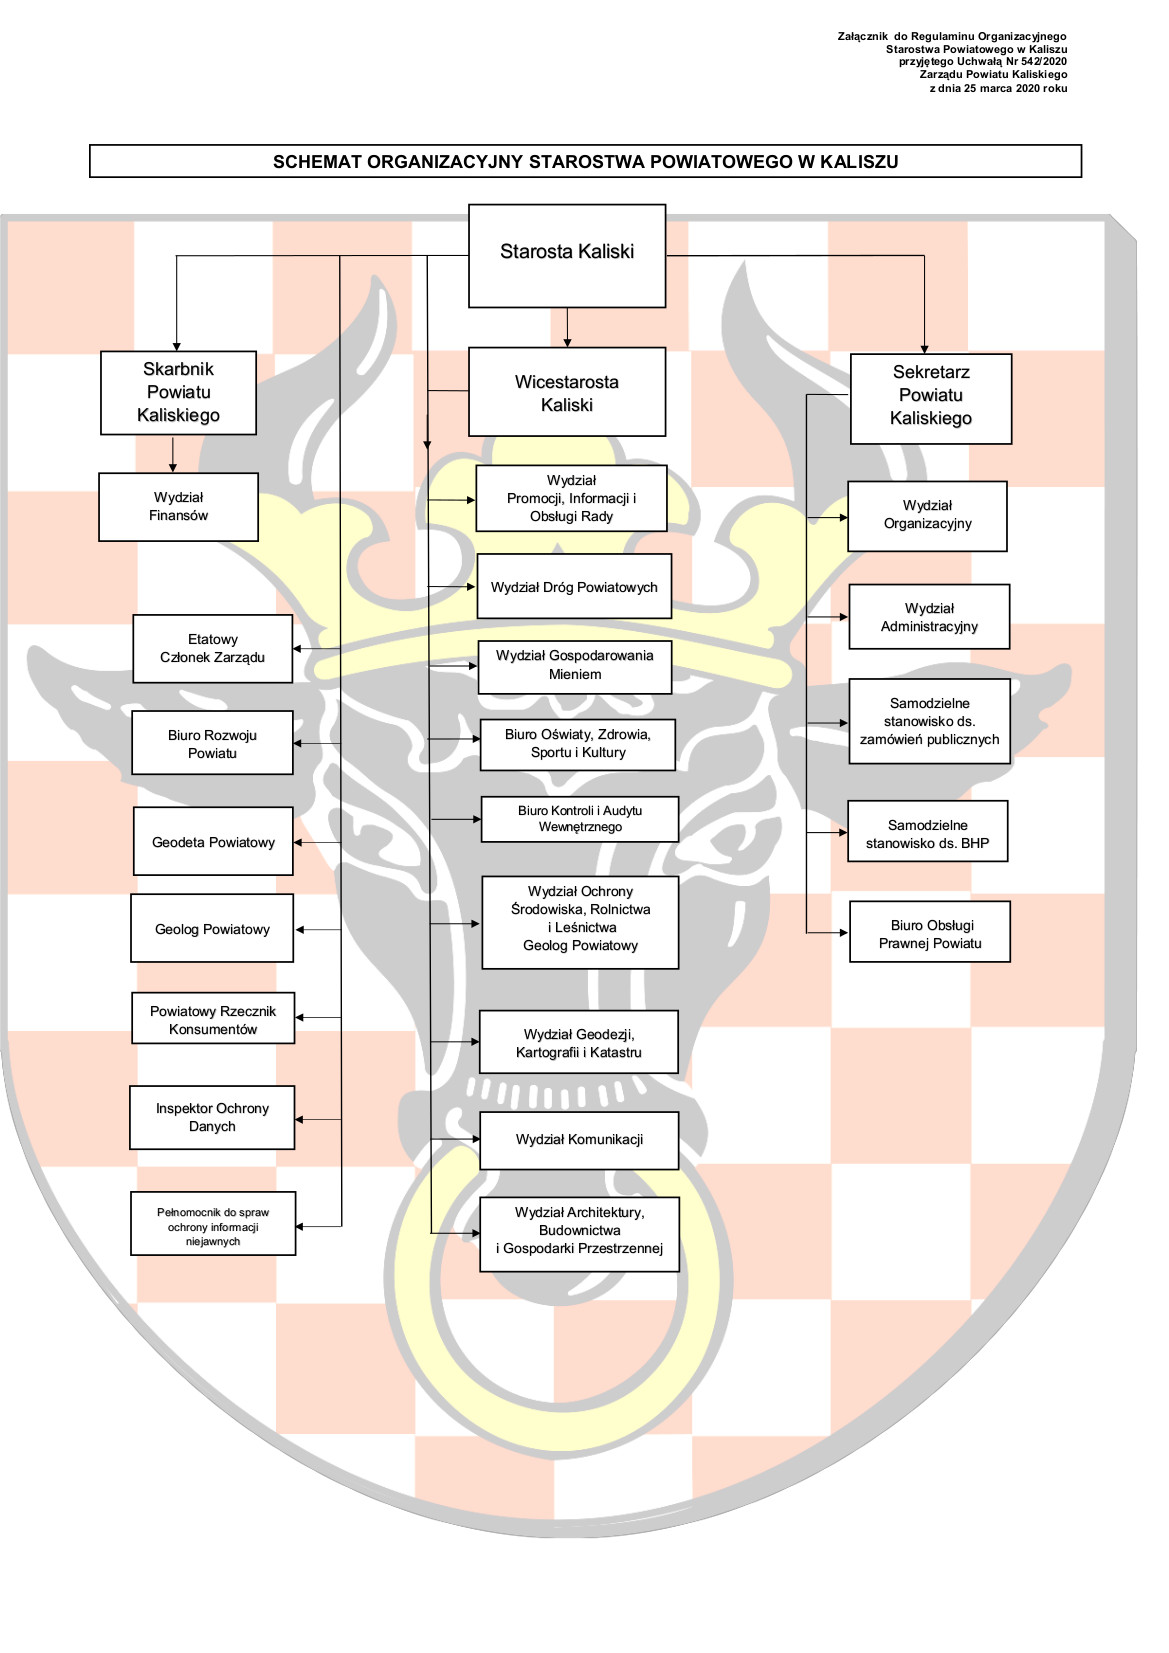 Zdjęcie schemat -struktura organizacyjna 2020 poprawiony.jpg